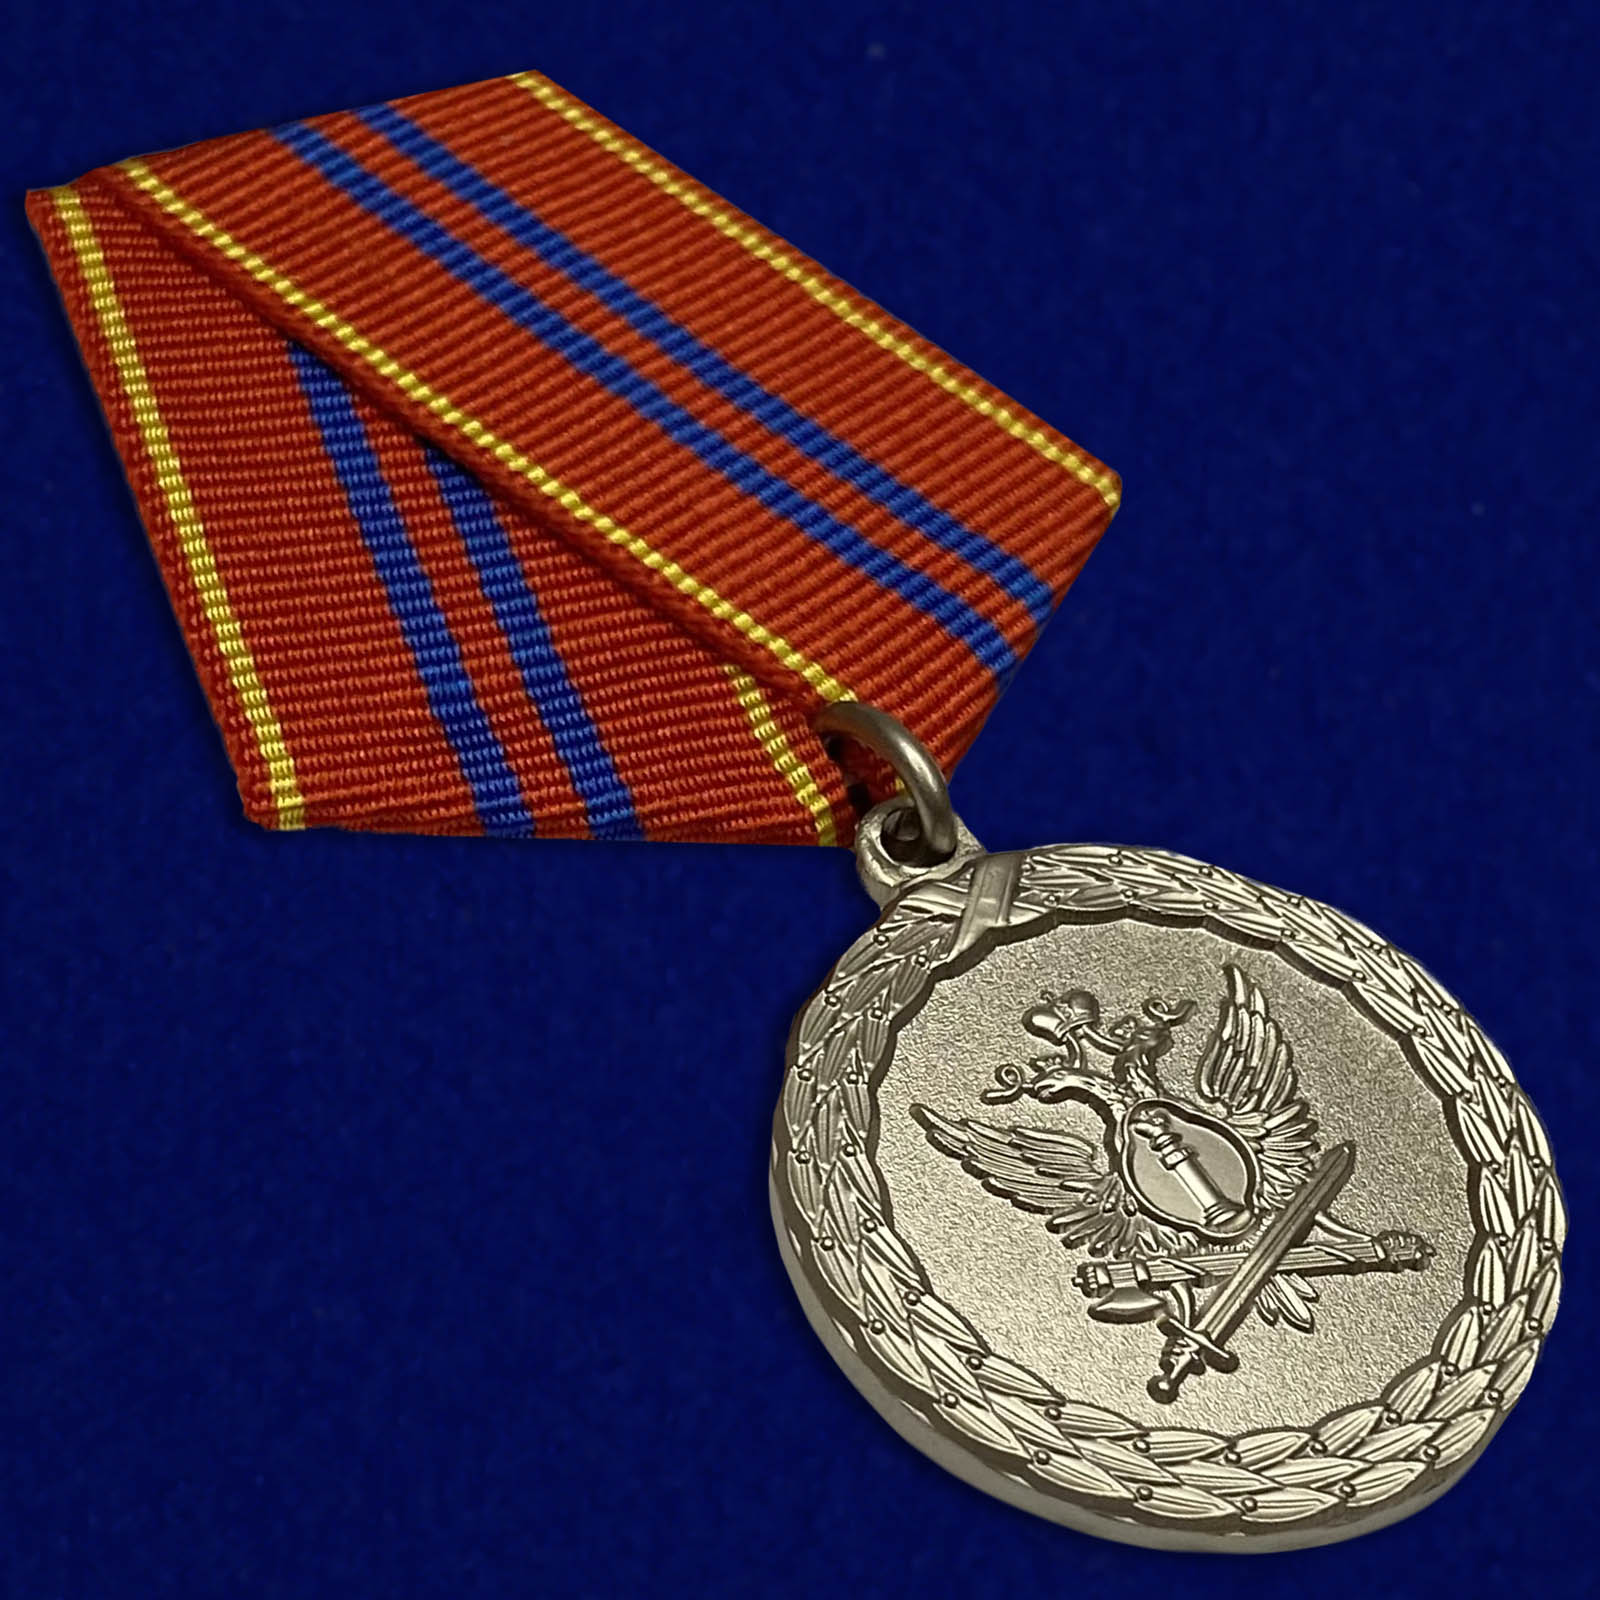 Медалью “За службу” награждаются